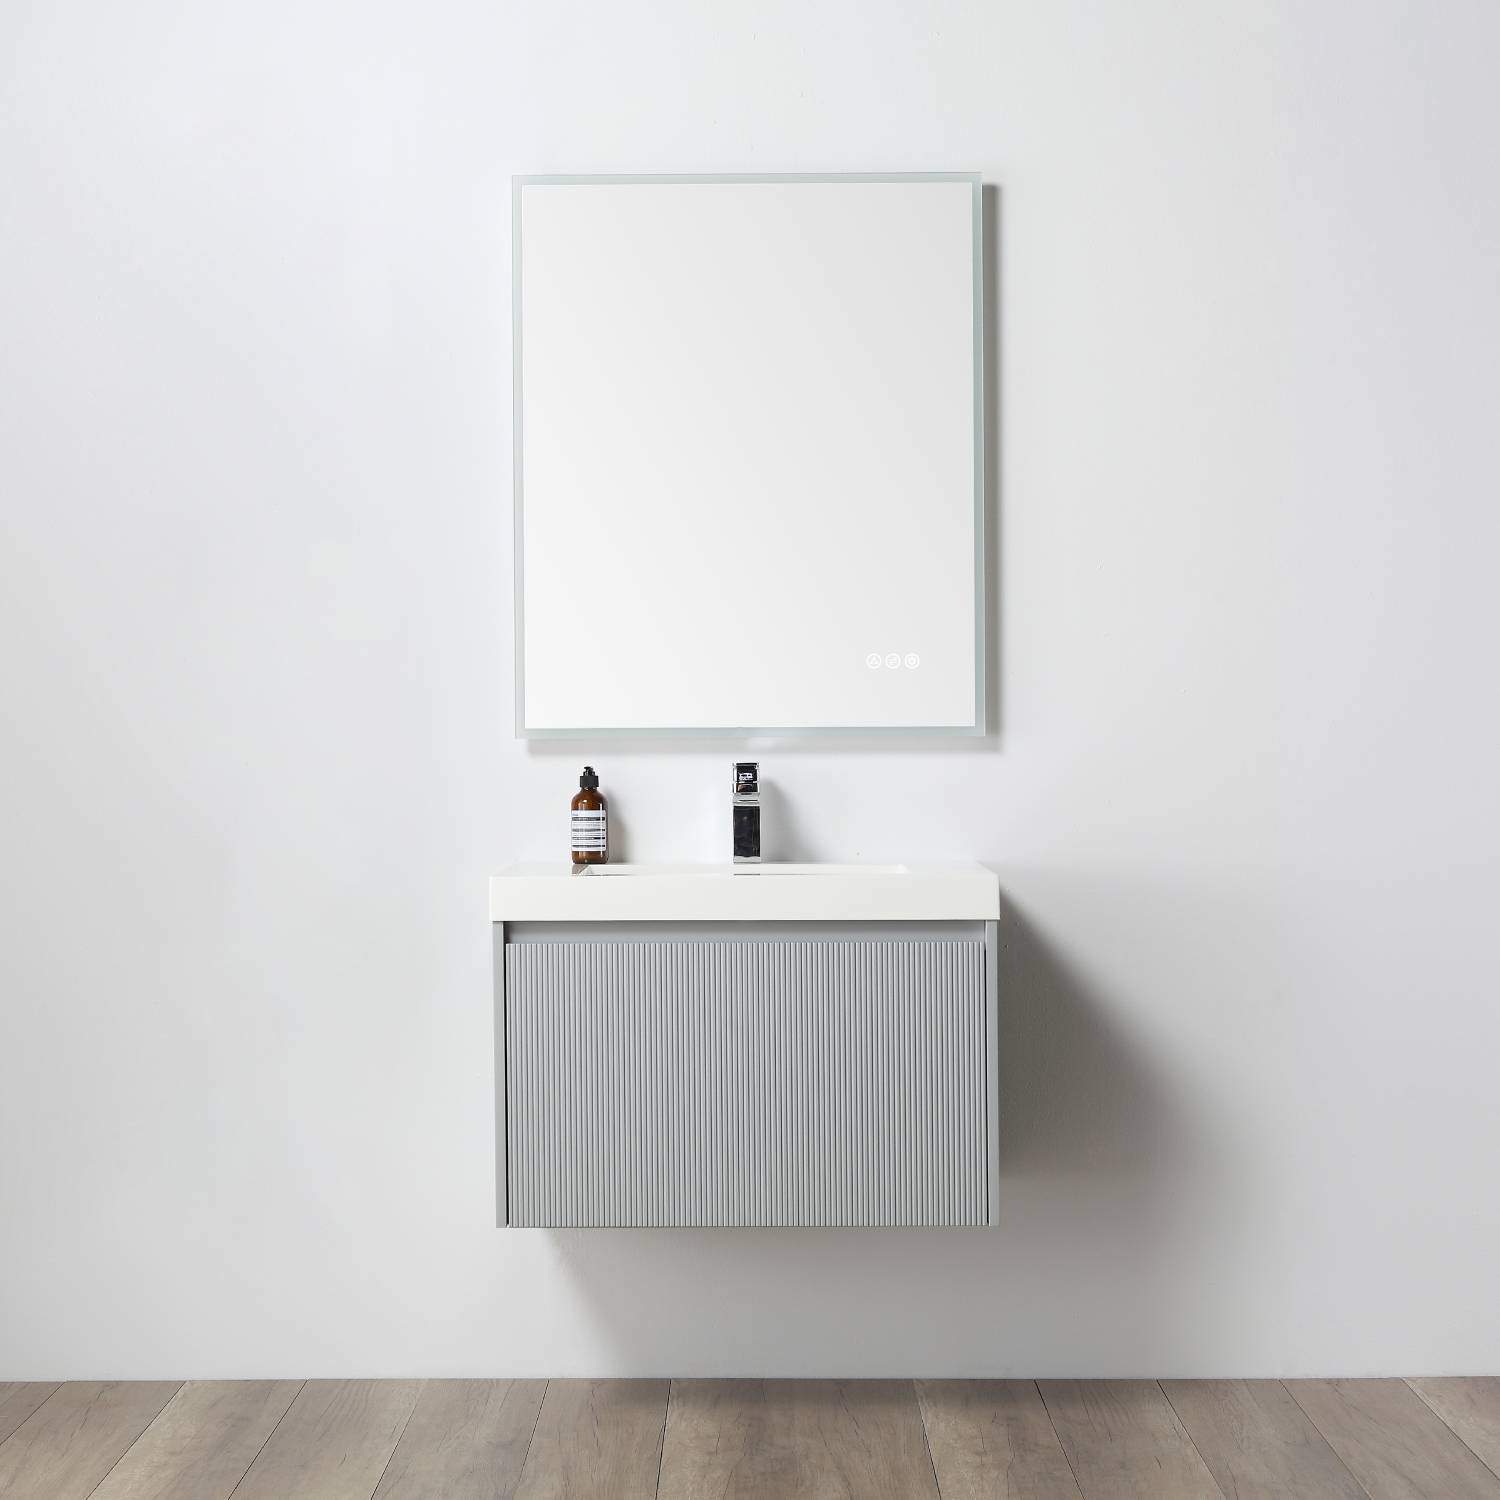 Positano 30" Bathroom Vanity  #size_30"  #color_ligth grey